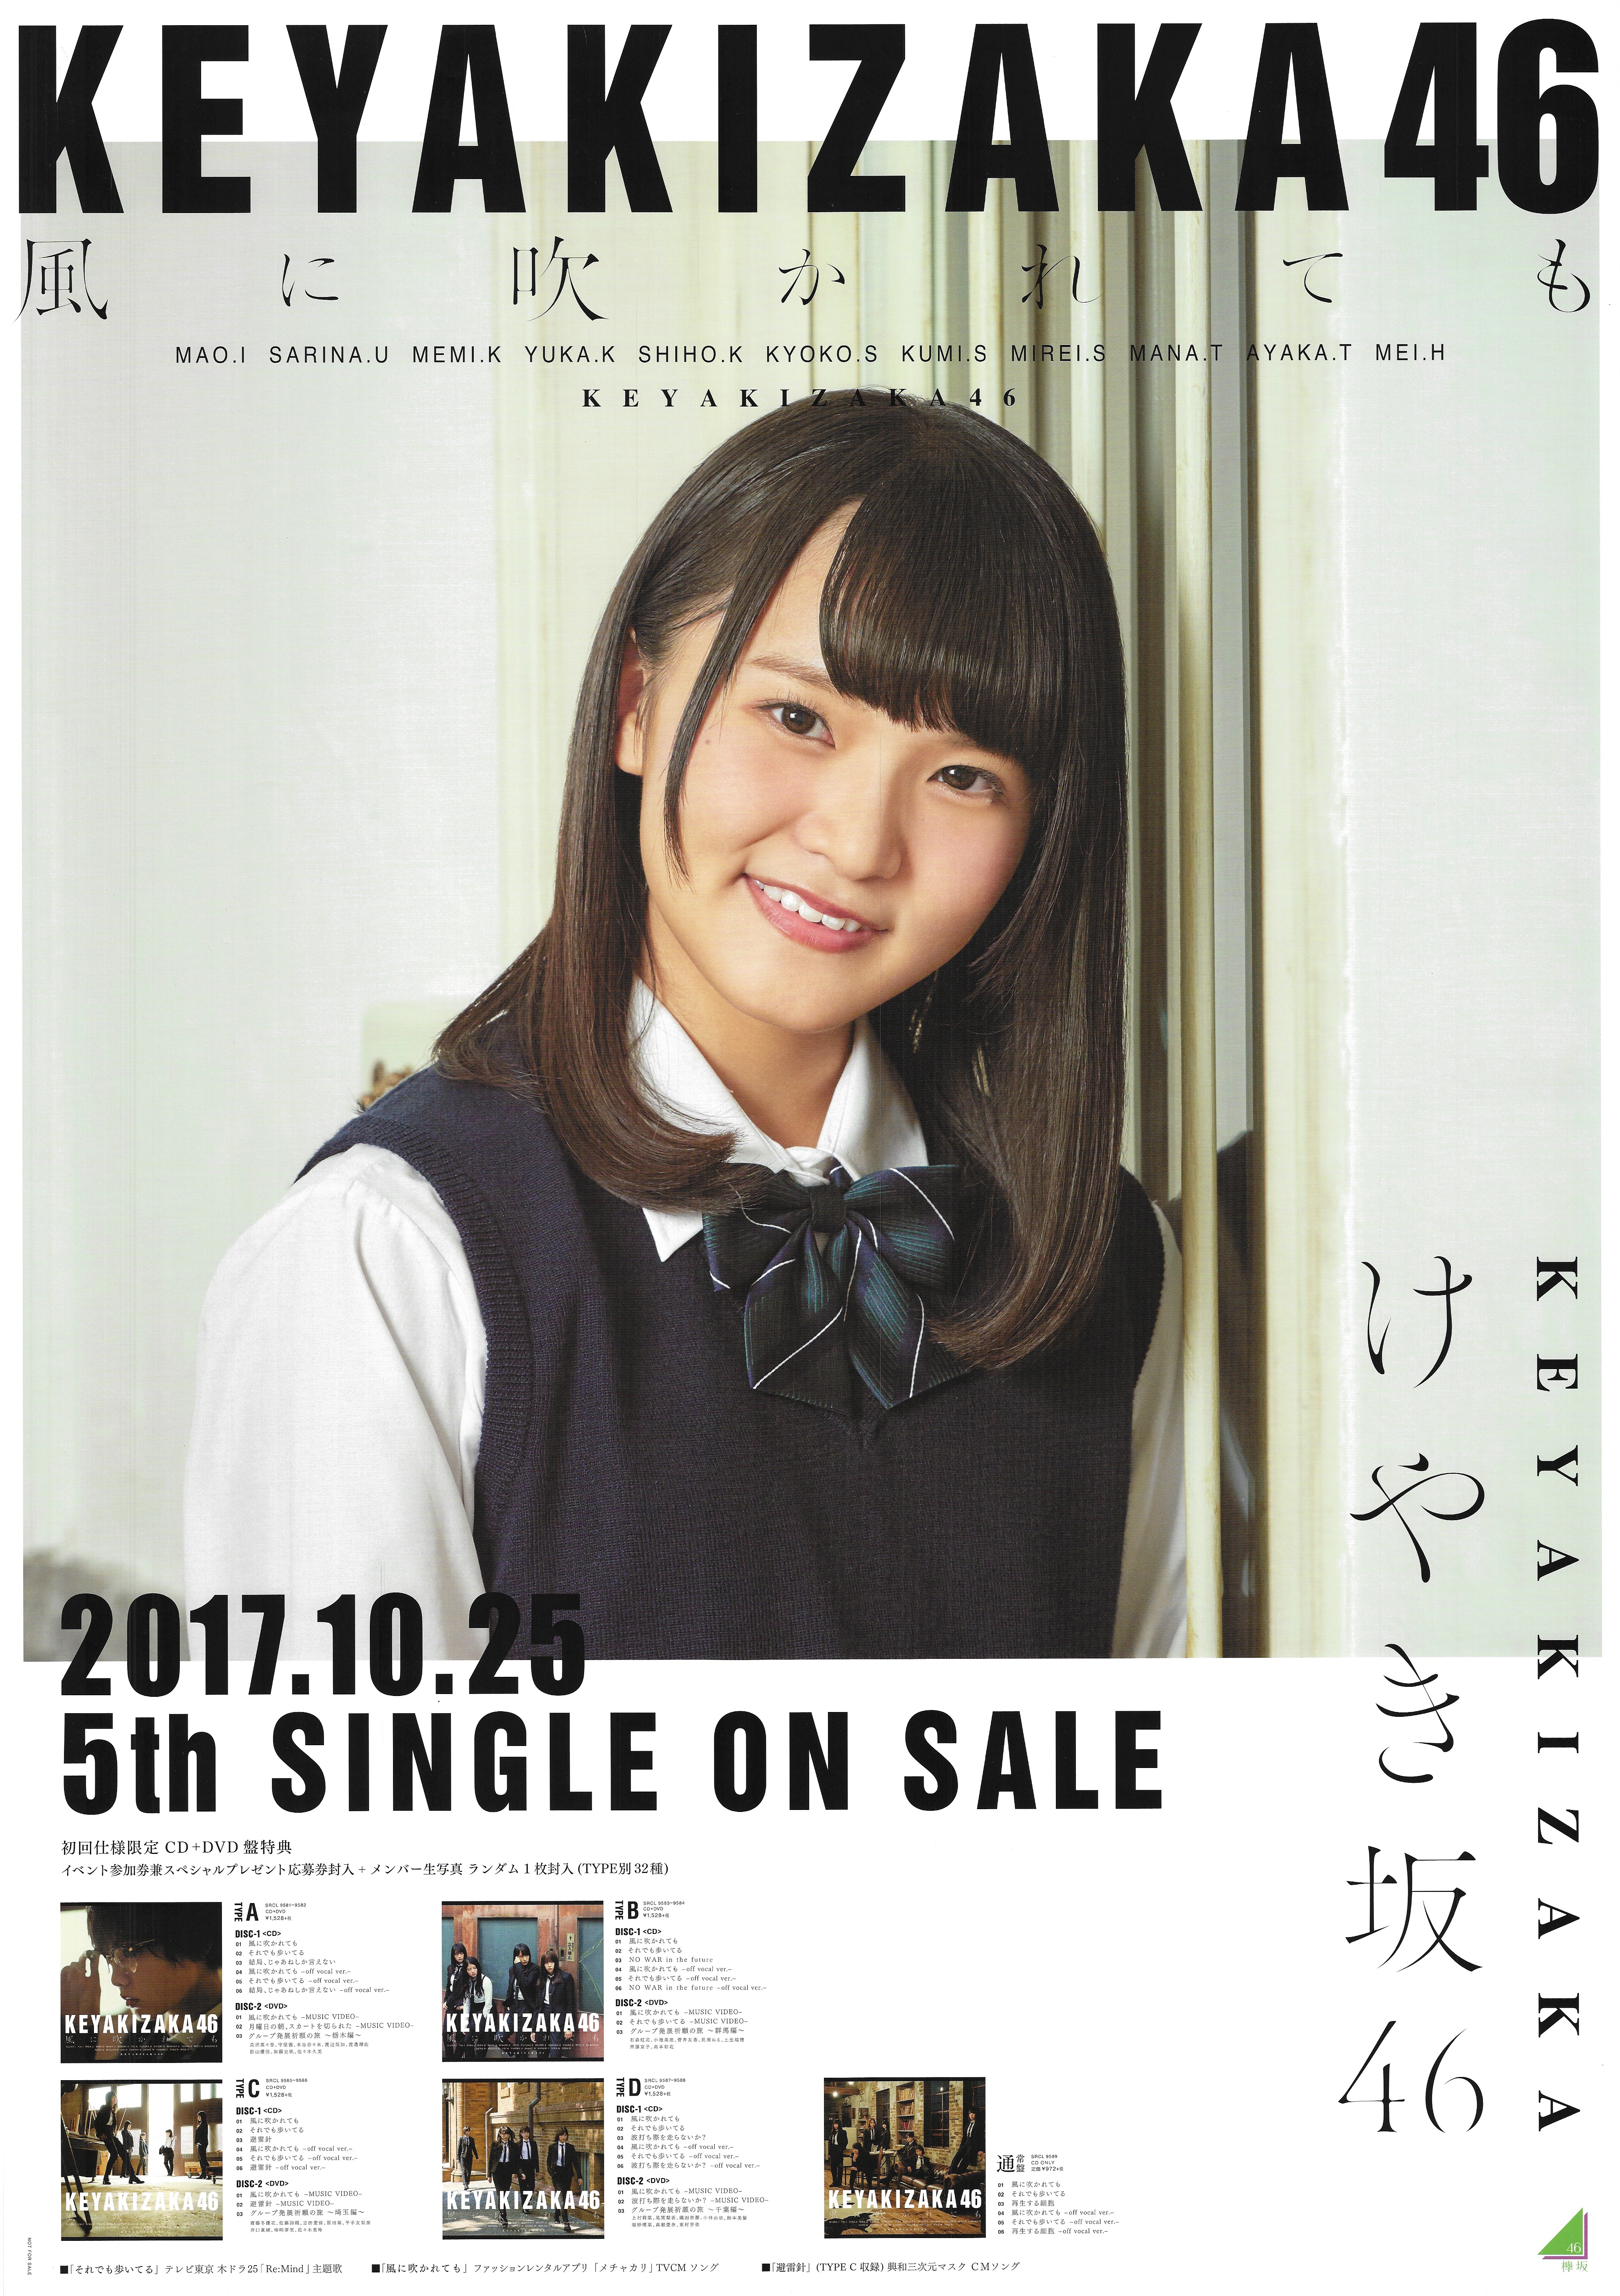 Kanji Keyakizaka 46 Takase Be Blowing In The Wind Aina B2 Poster Mandarake Online Shop